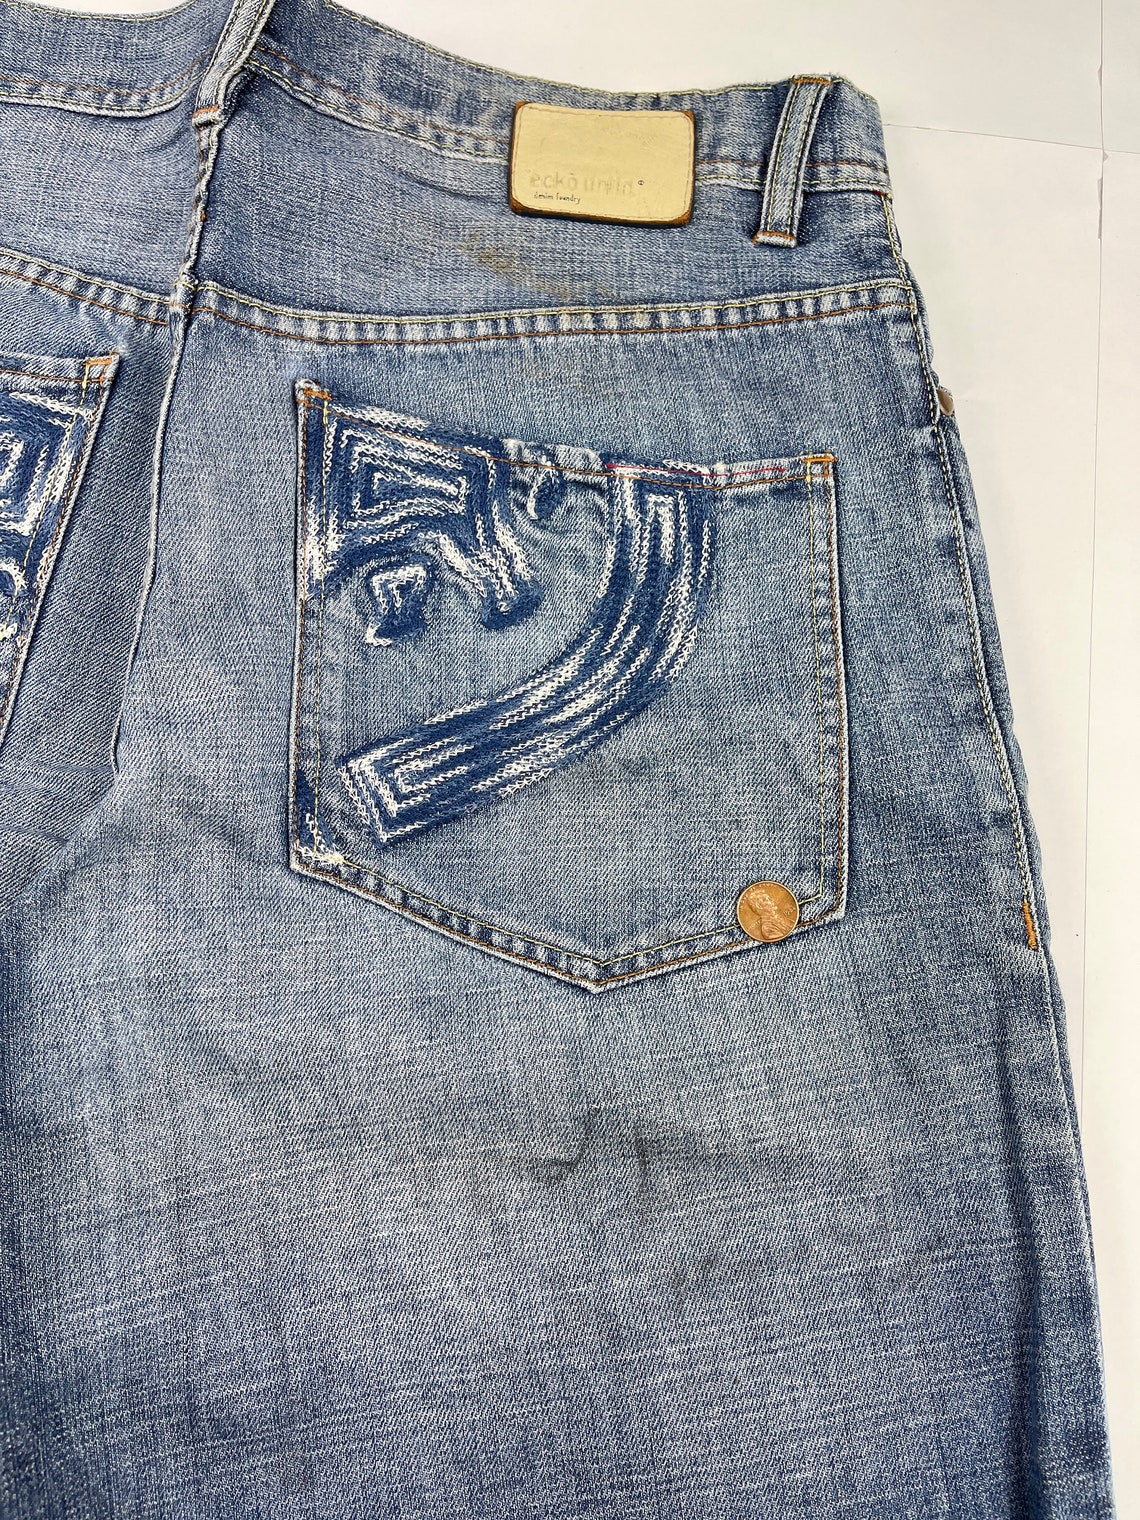 Ecko Unltd Jeans Blue Vintage Baggy Pants 90s Hip Hop - Etsy